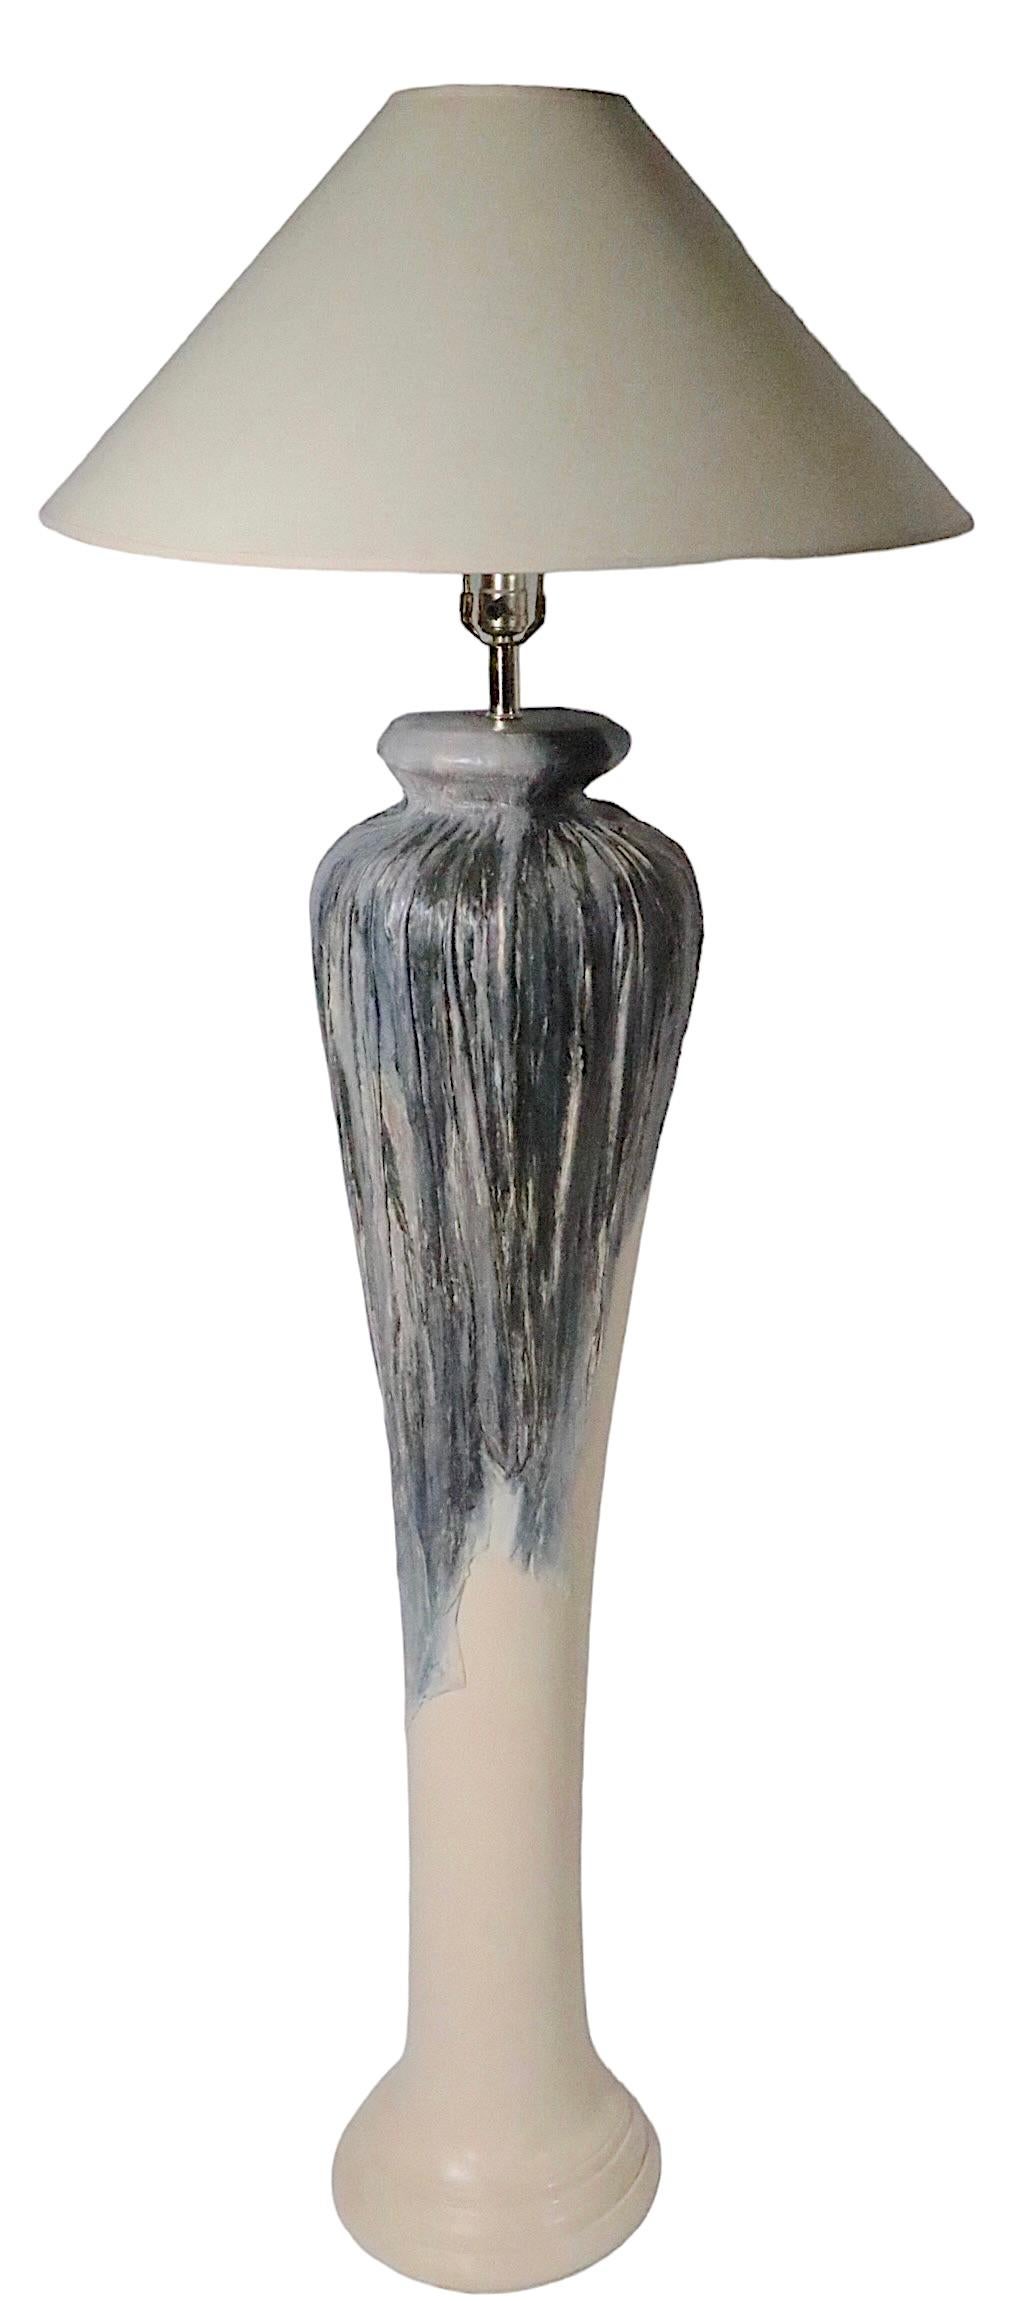 Dramatique lampadaire surdimensionné en céramique de forme bulbeuse avec une glaçure texturée contrastée dans les tons sombres de la partie supérieure, qui semble couler sur la partie inférieure lisse de couleur crème. La lampe est en très bon état